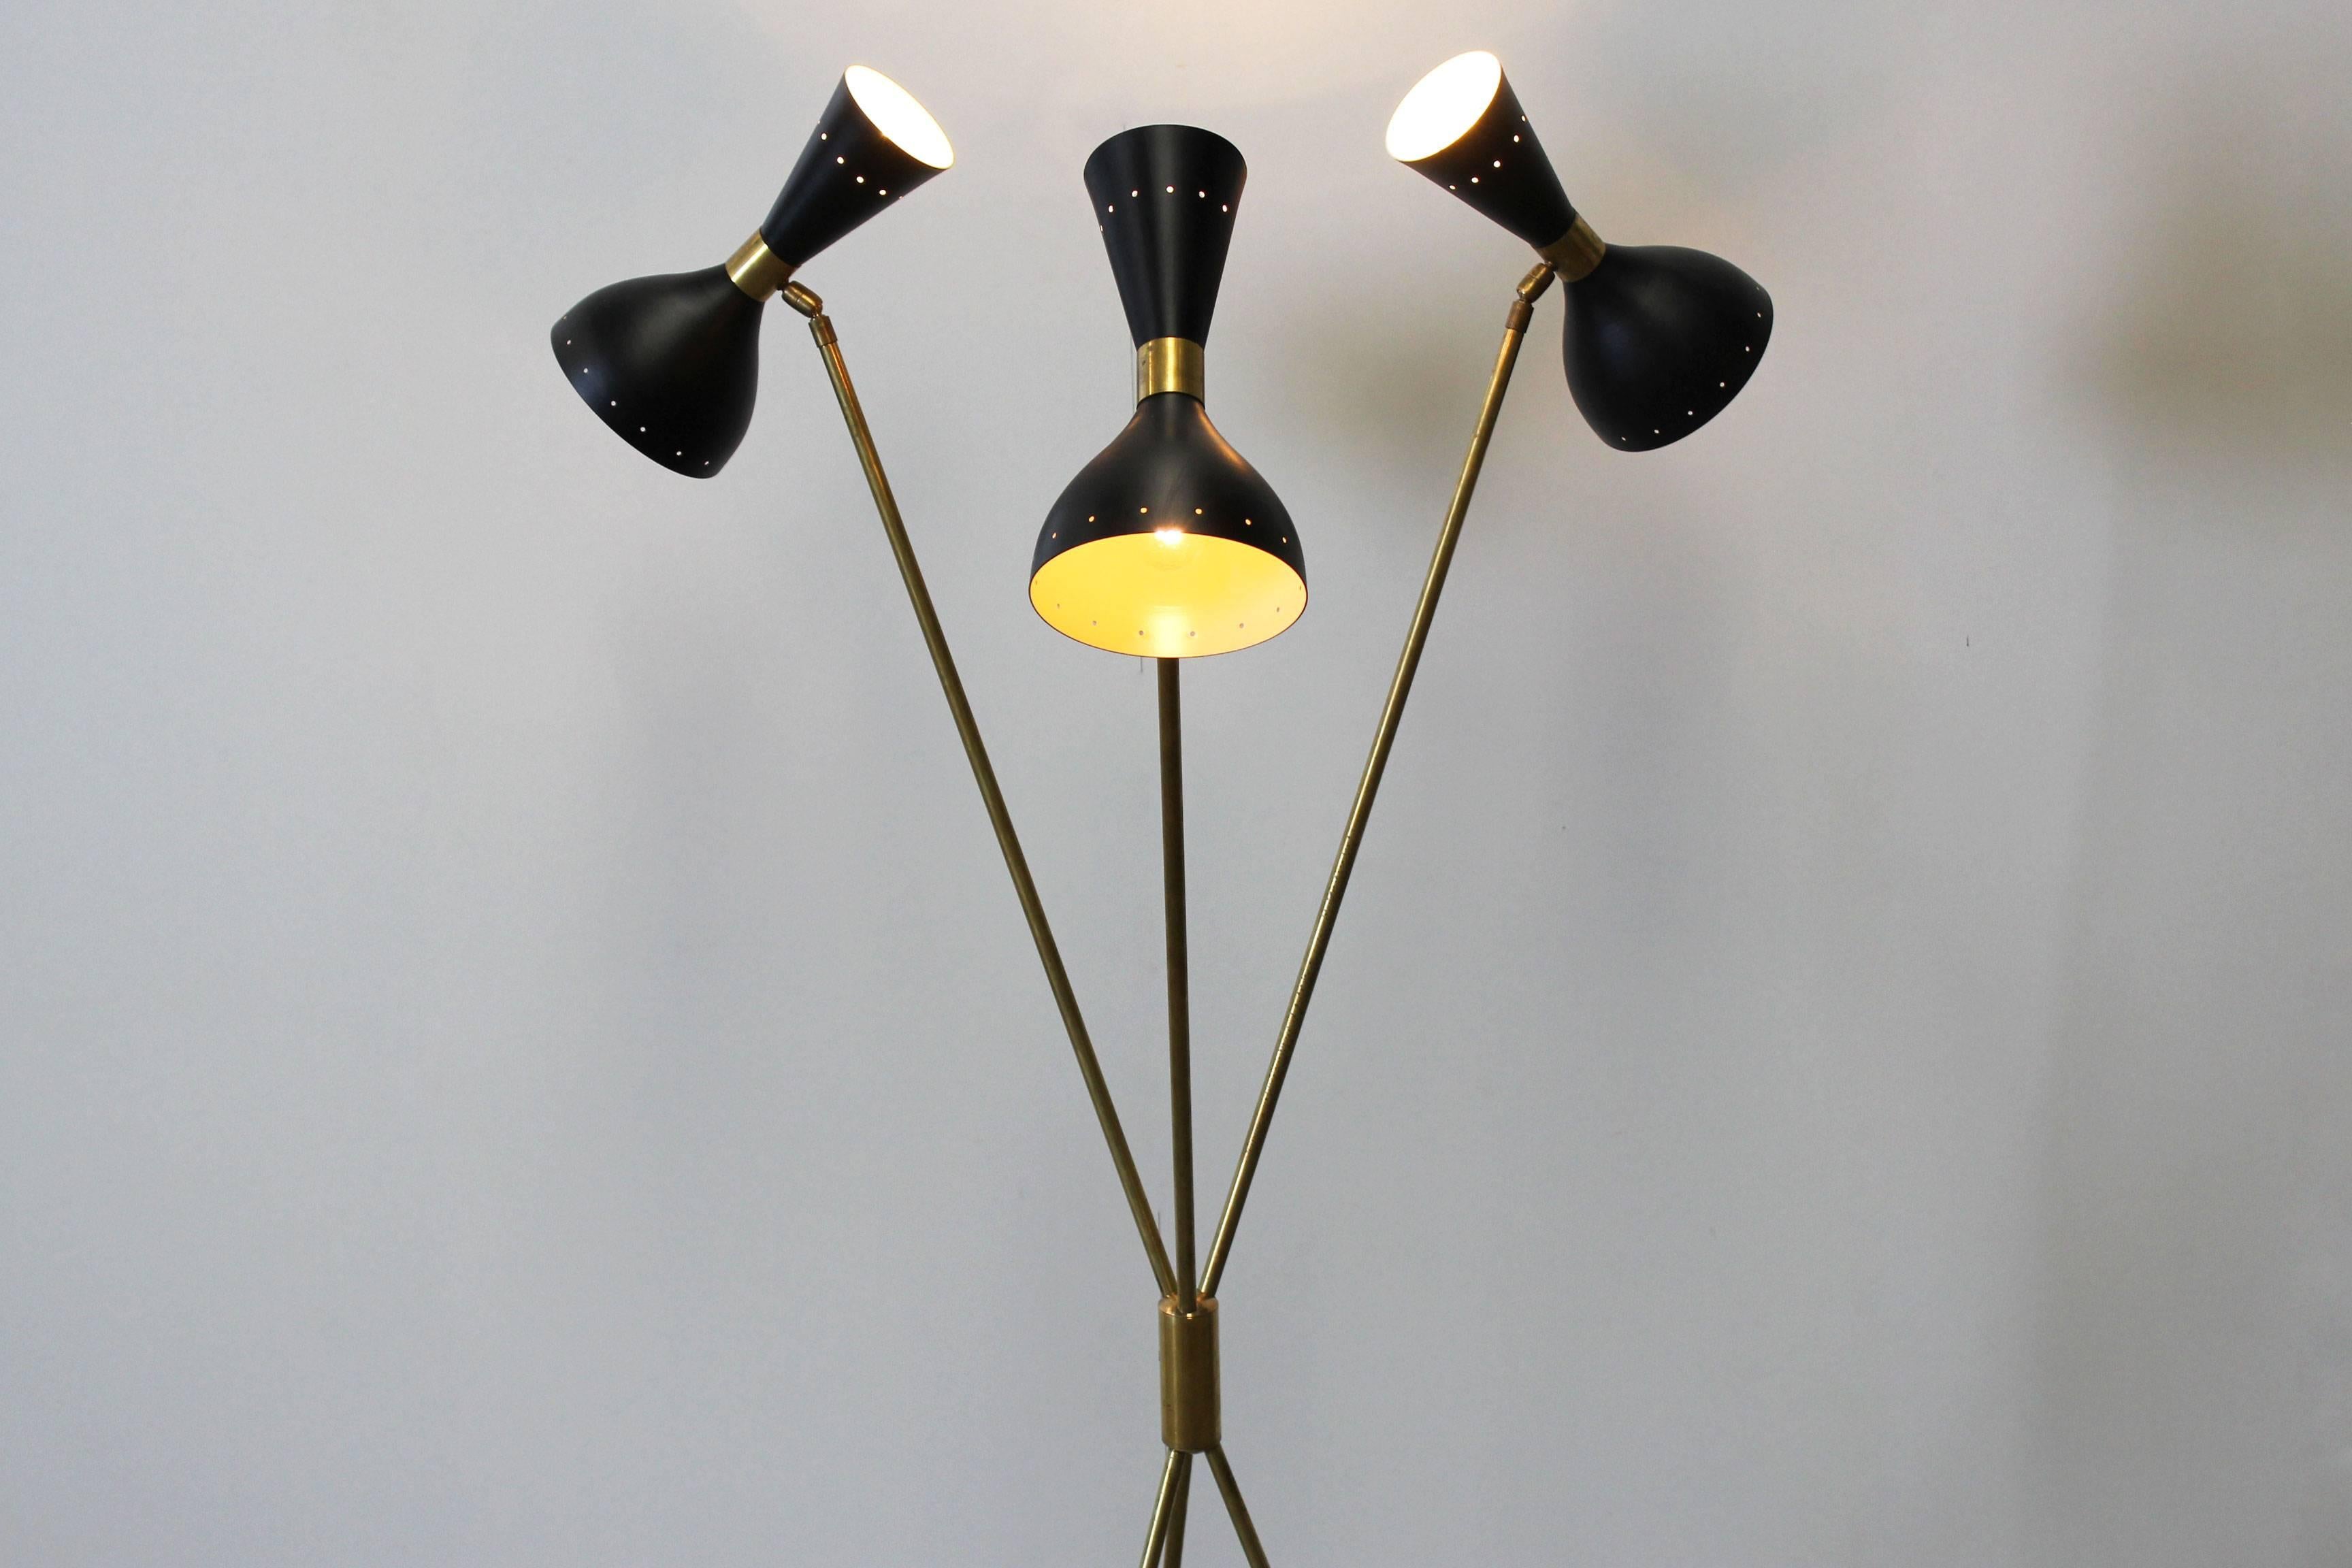 Midcentury Design Italian Minimalist Floor Lamp Style 1950s Stilnovo Brass Black 2